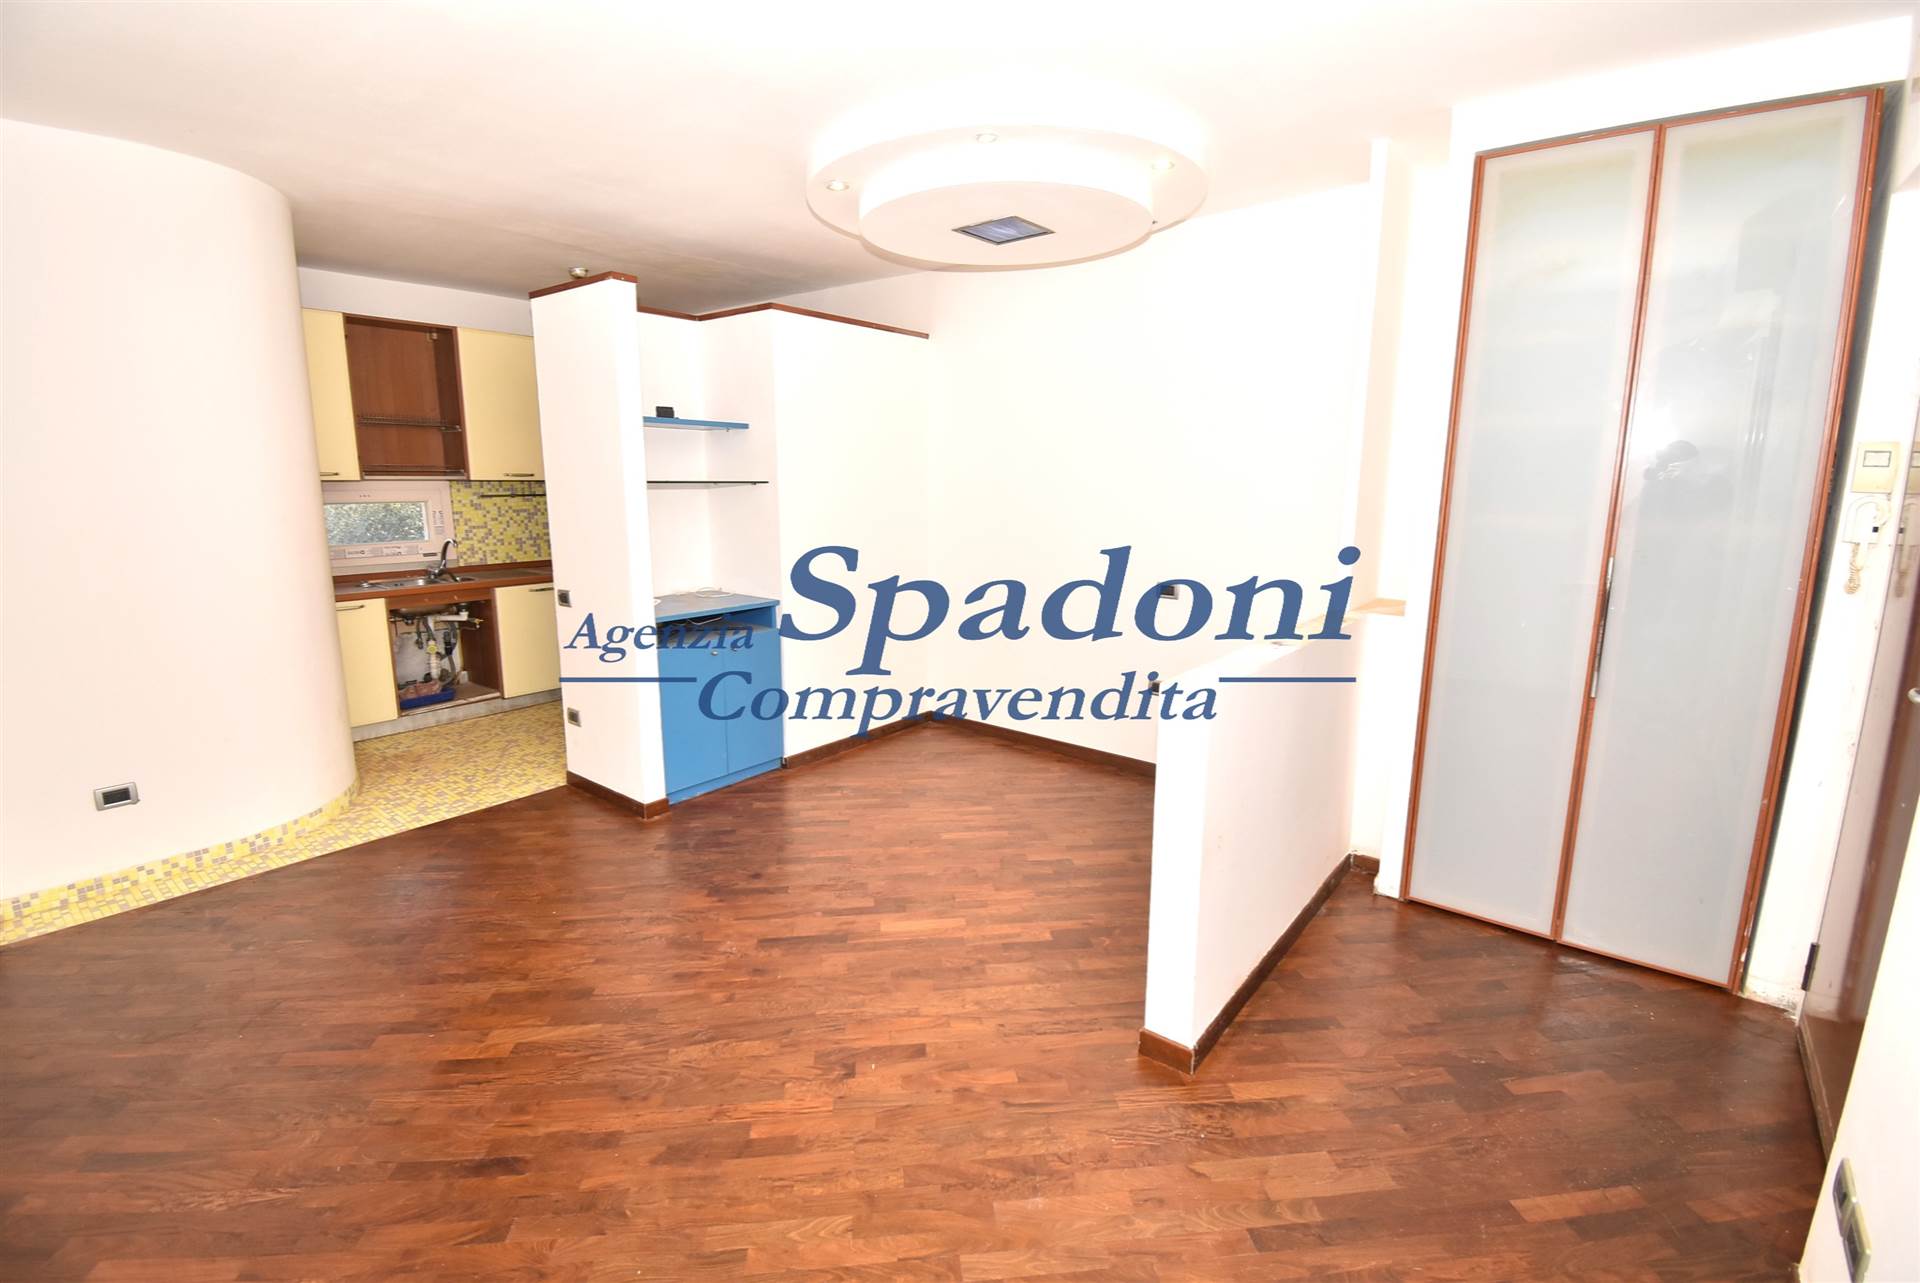 Appartamento in vendita a Uzzano, 3 locali, prezzo € 74.000 | PortaleAgenzieImmobiliari.it